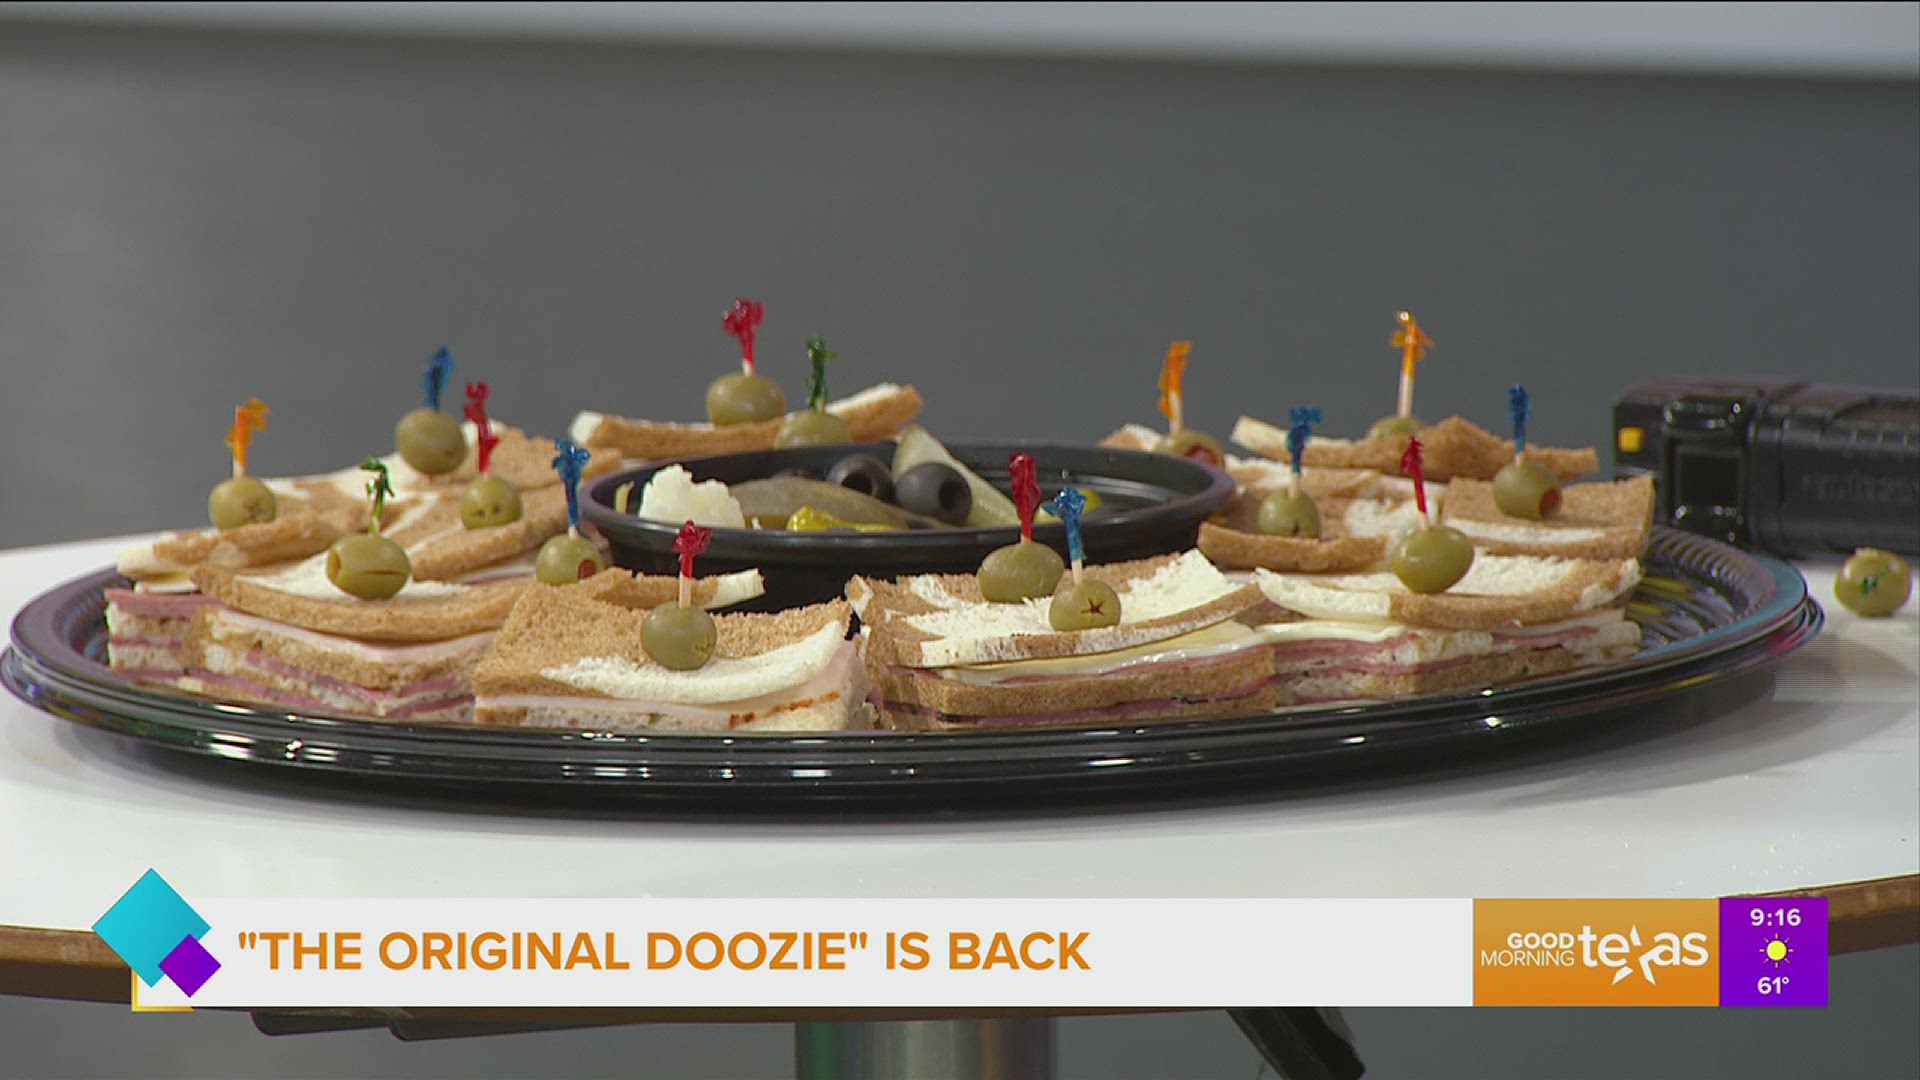 "The Original Doozie" sandwiches